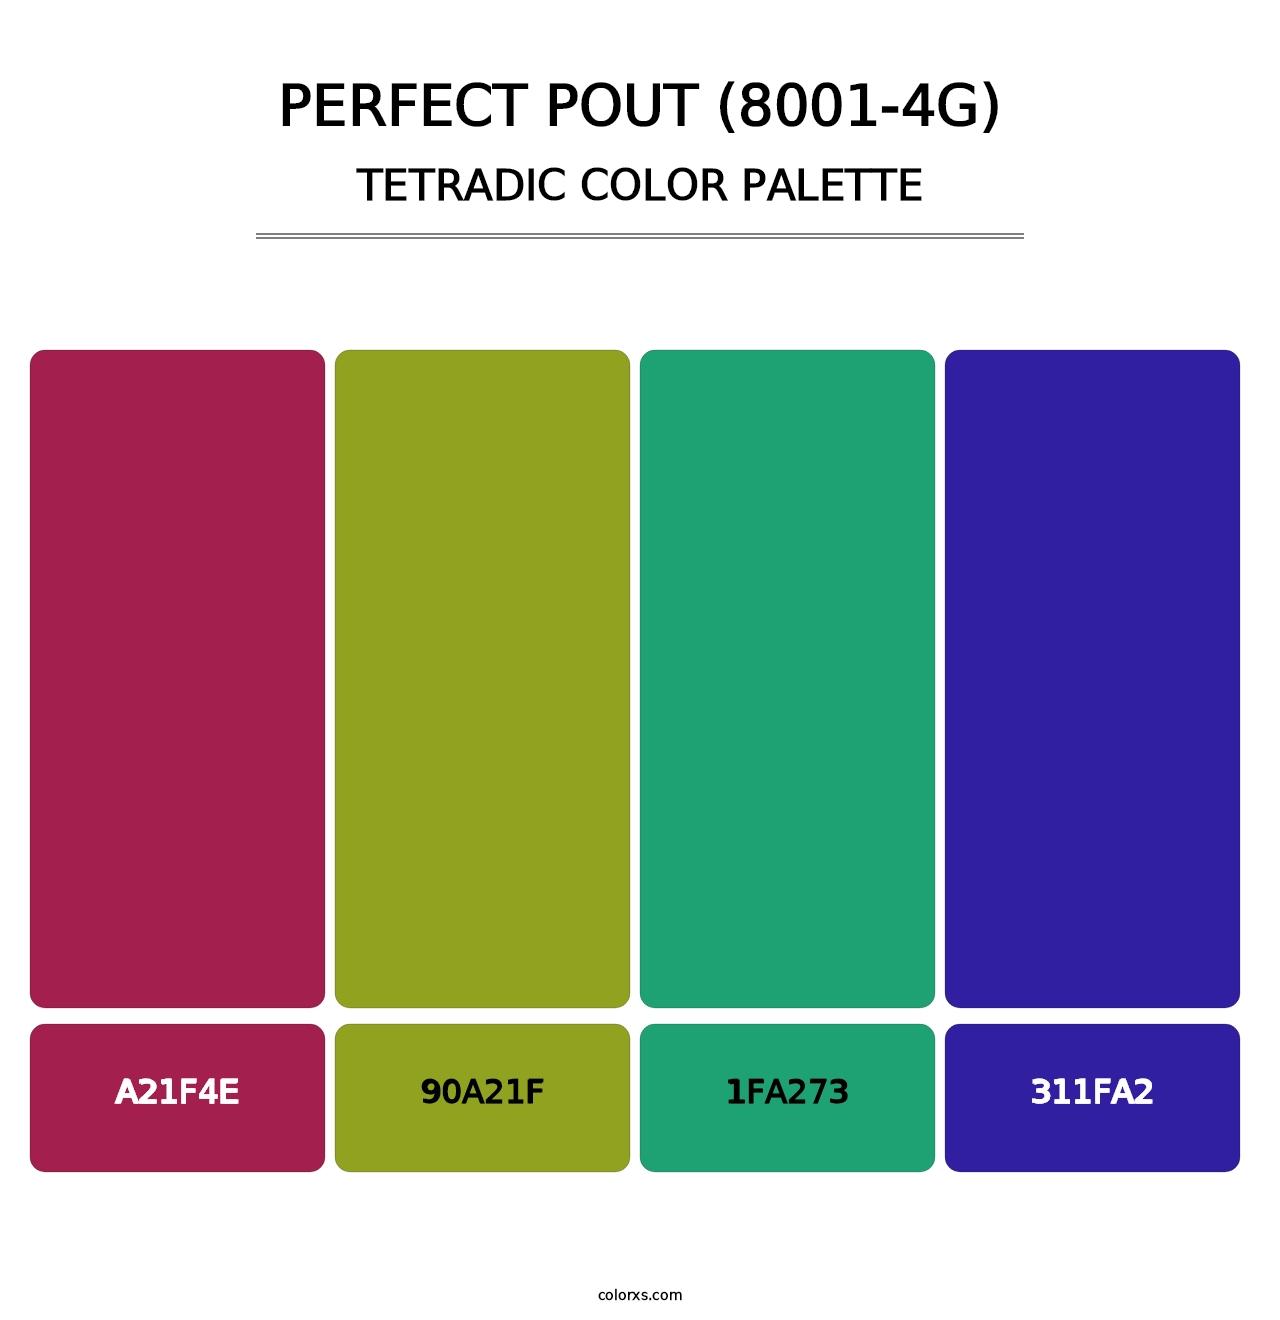 Perfect Pout (8001-4G) - Tetradic Color Palette